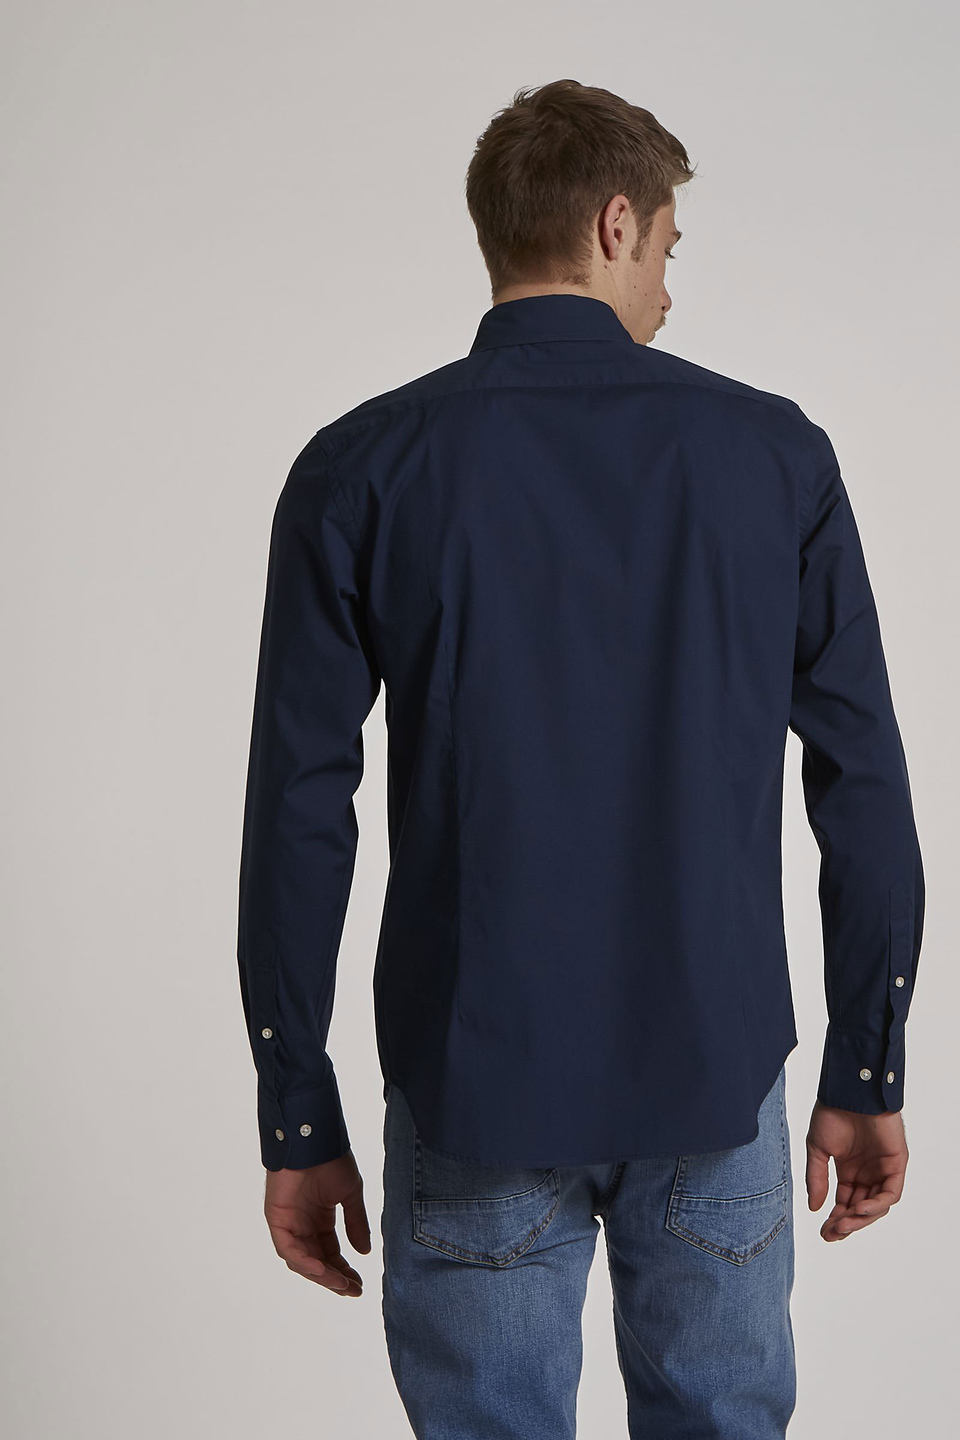 Chemise homme à manches longues et coupe classique | La Martina - Official Online Shop